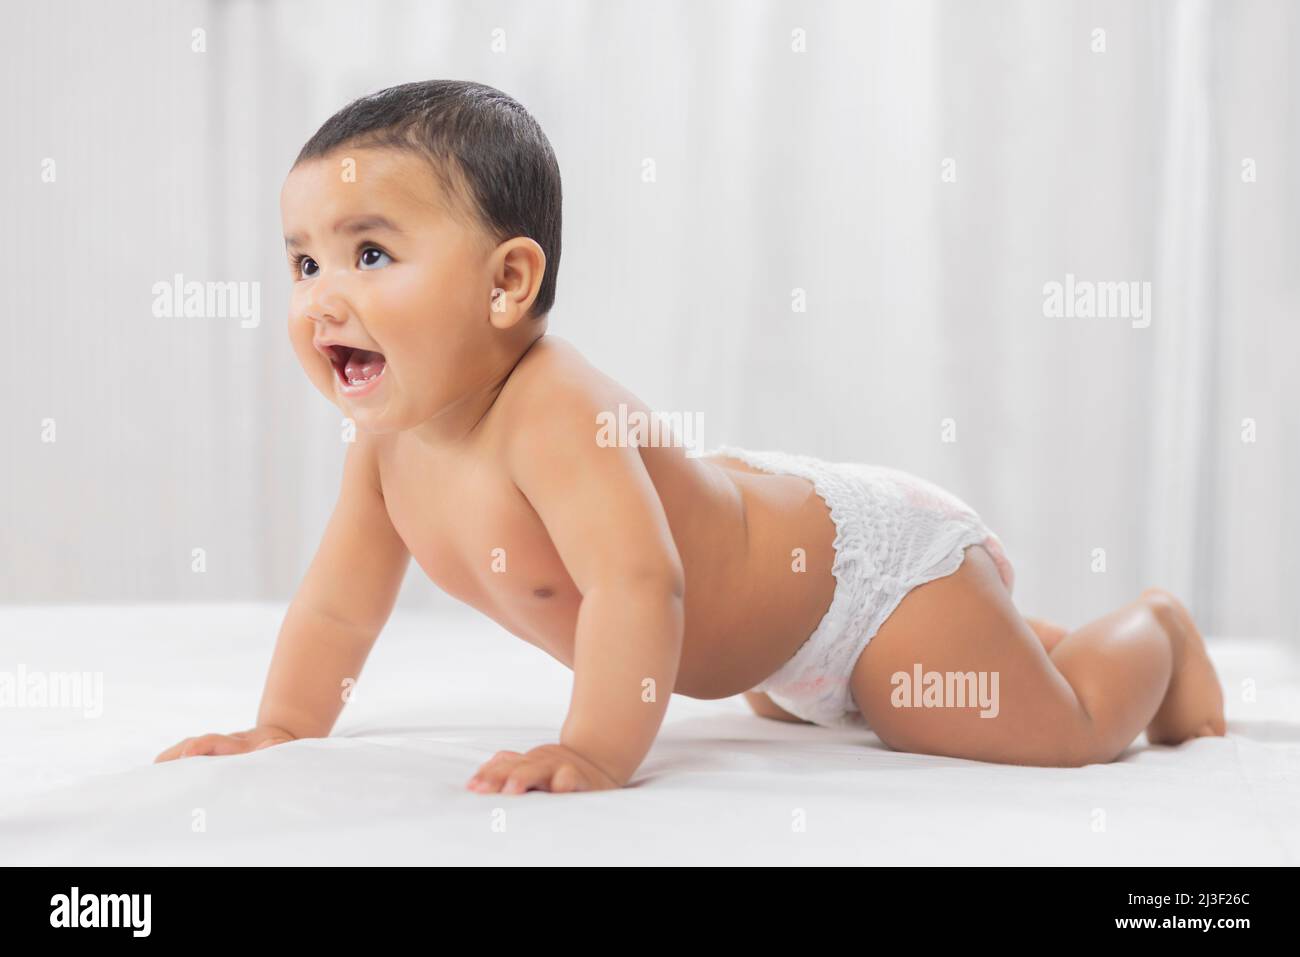 Niedliches Baby in Windel kriecht auf dem Bett Stockfoto